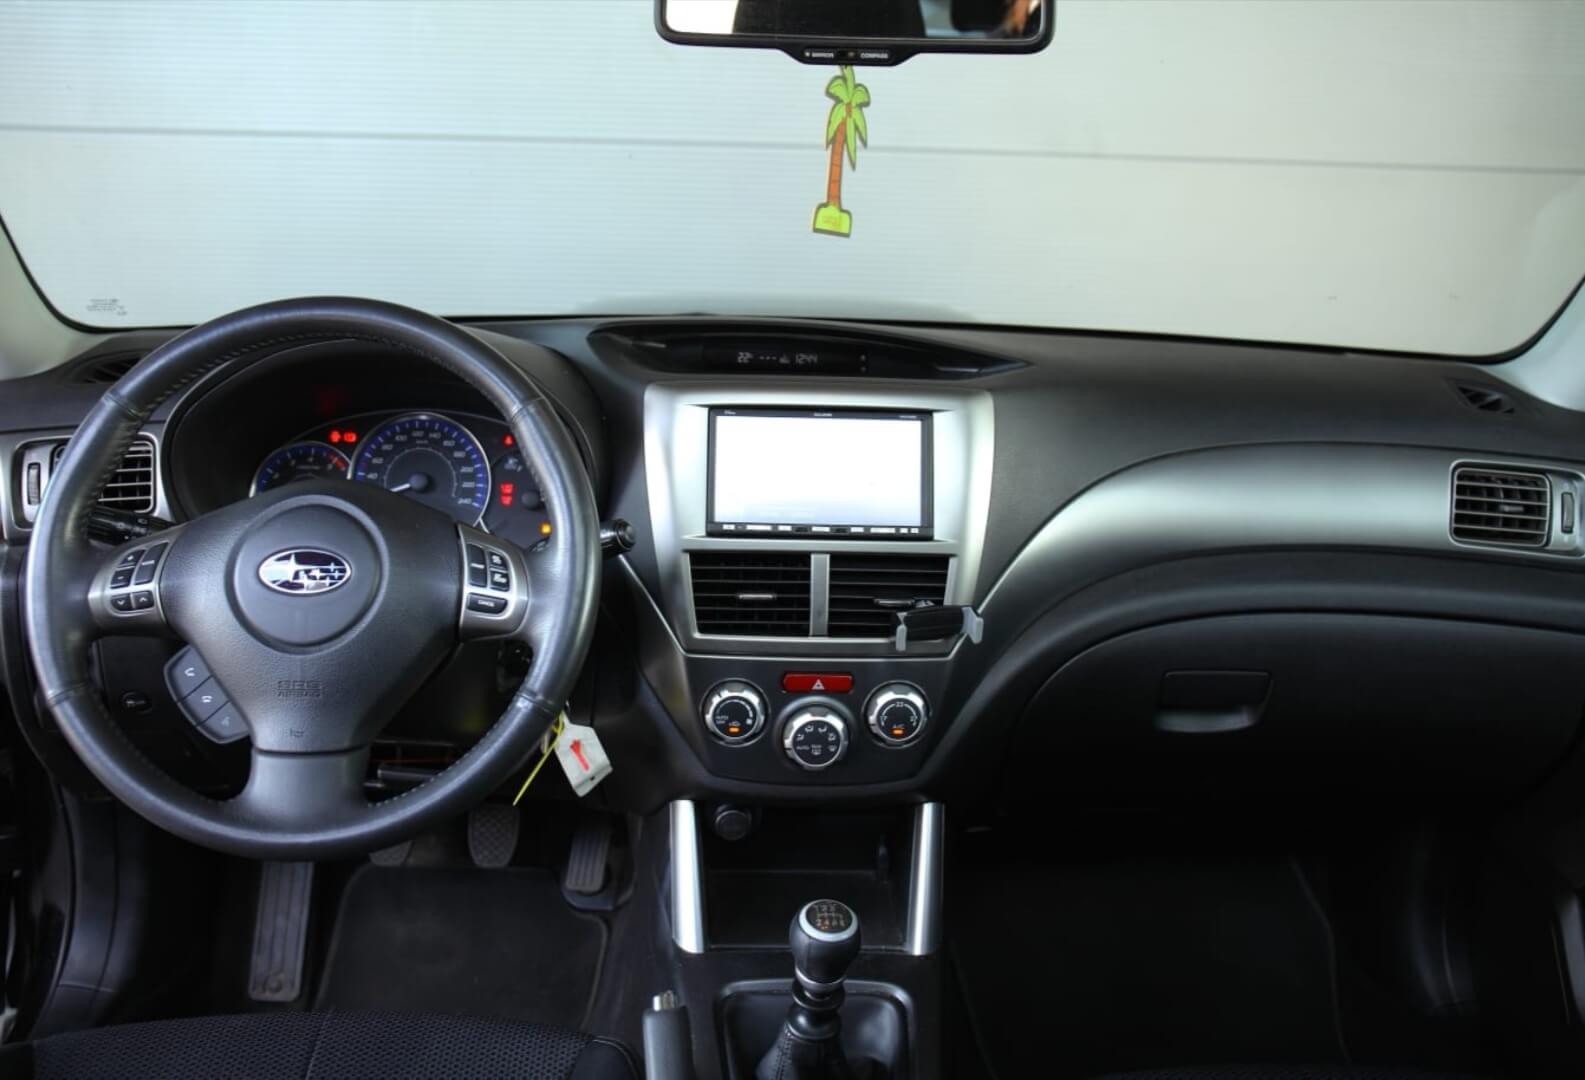 Subaru Forester interior – by Next Level Automotive – Go to nextlevelautomotive.eu